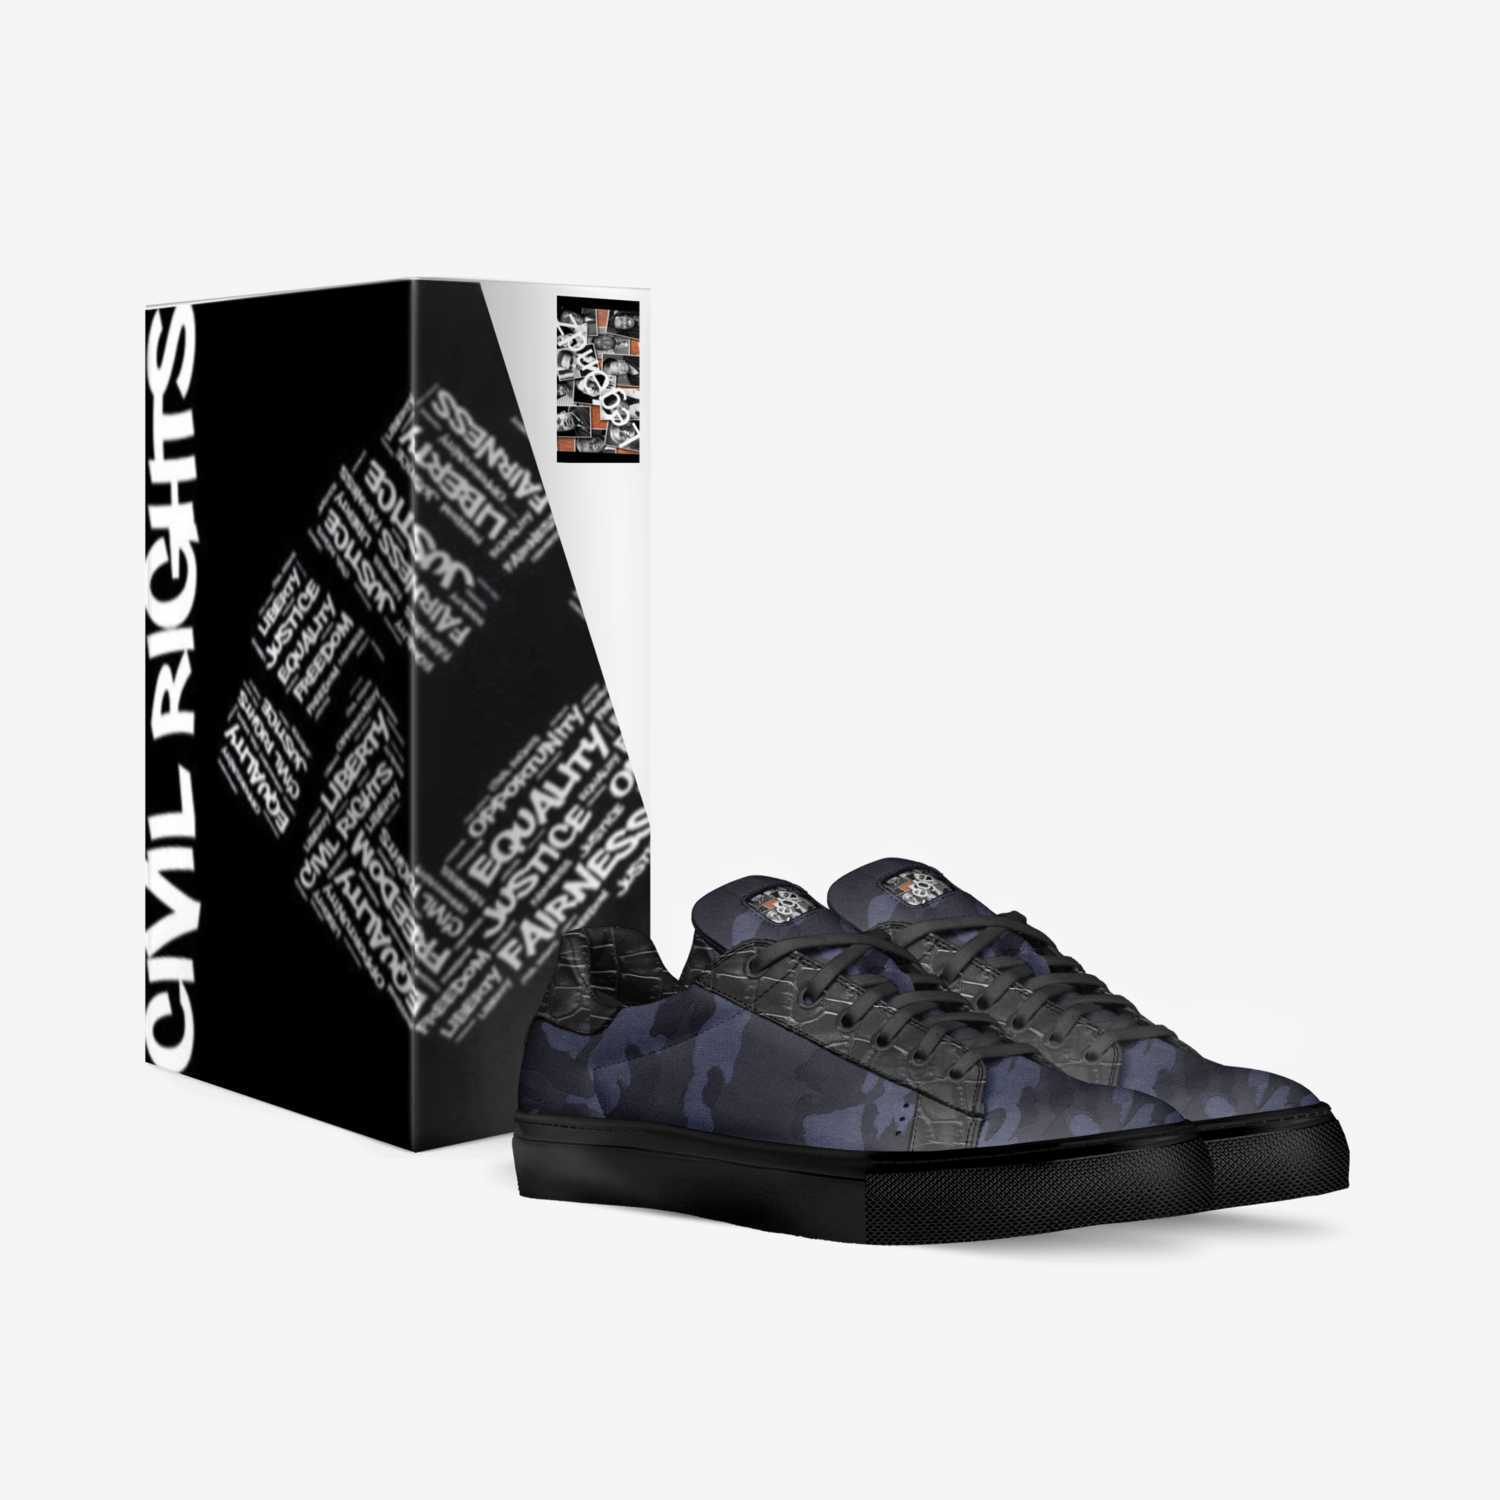 LegƏndz BLACKOUTZ custom made in Italy shoes by Juju & Najm Toomey | Box view